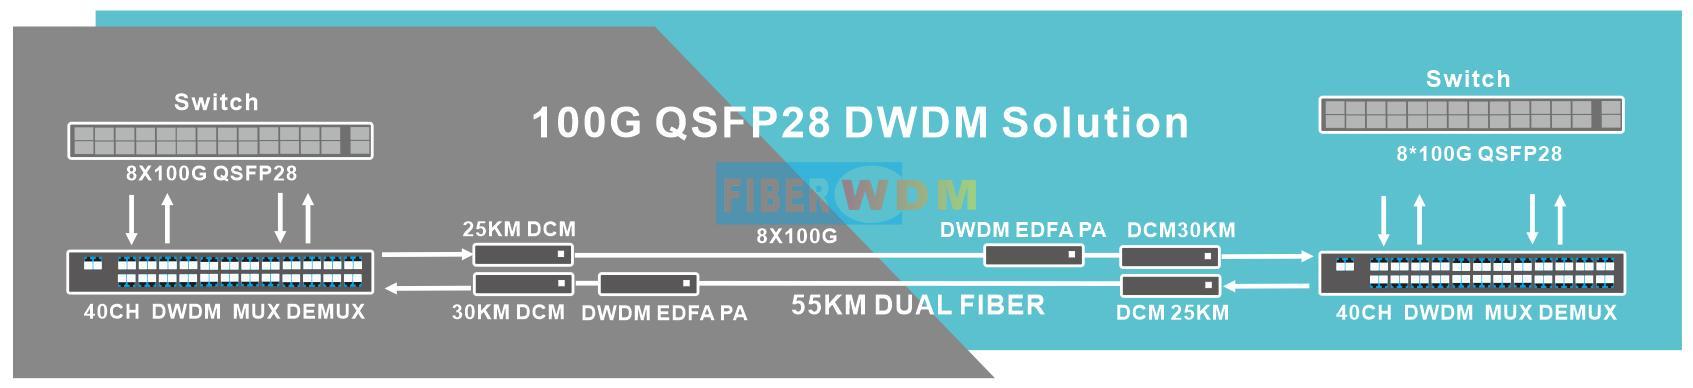 QSFP28 100G DWDM